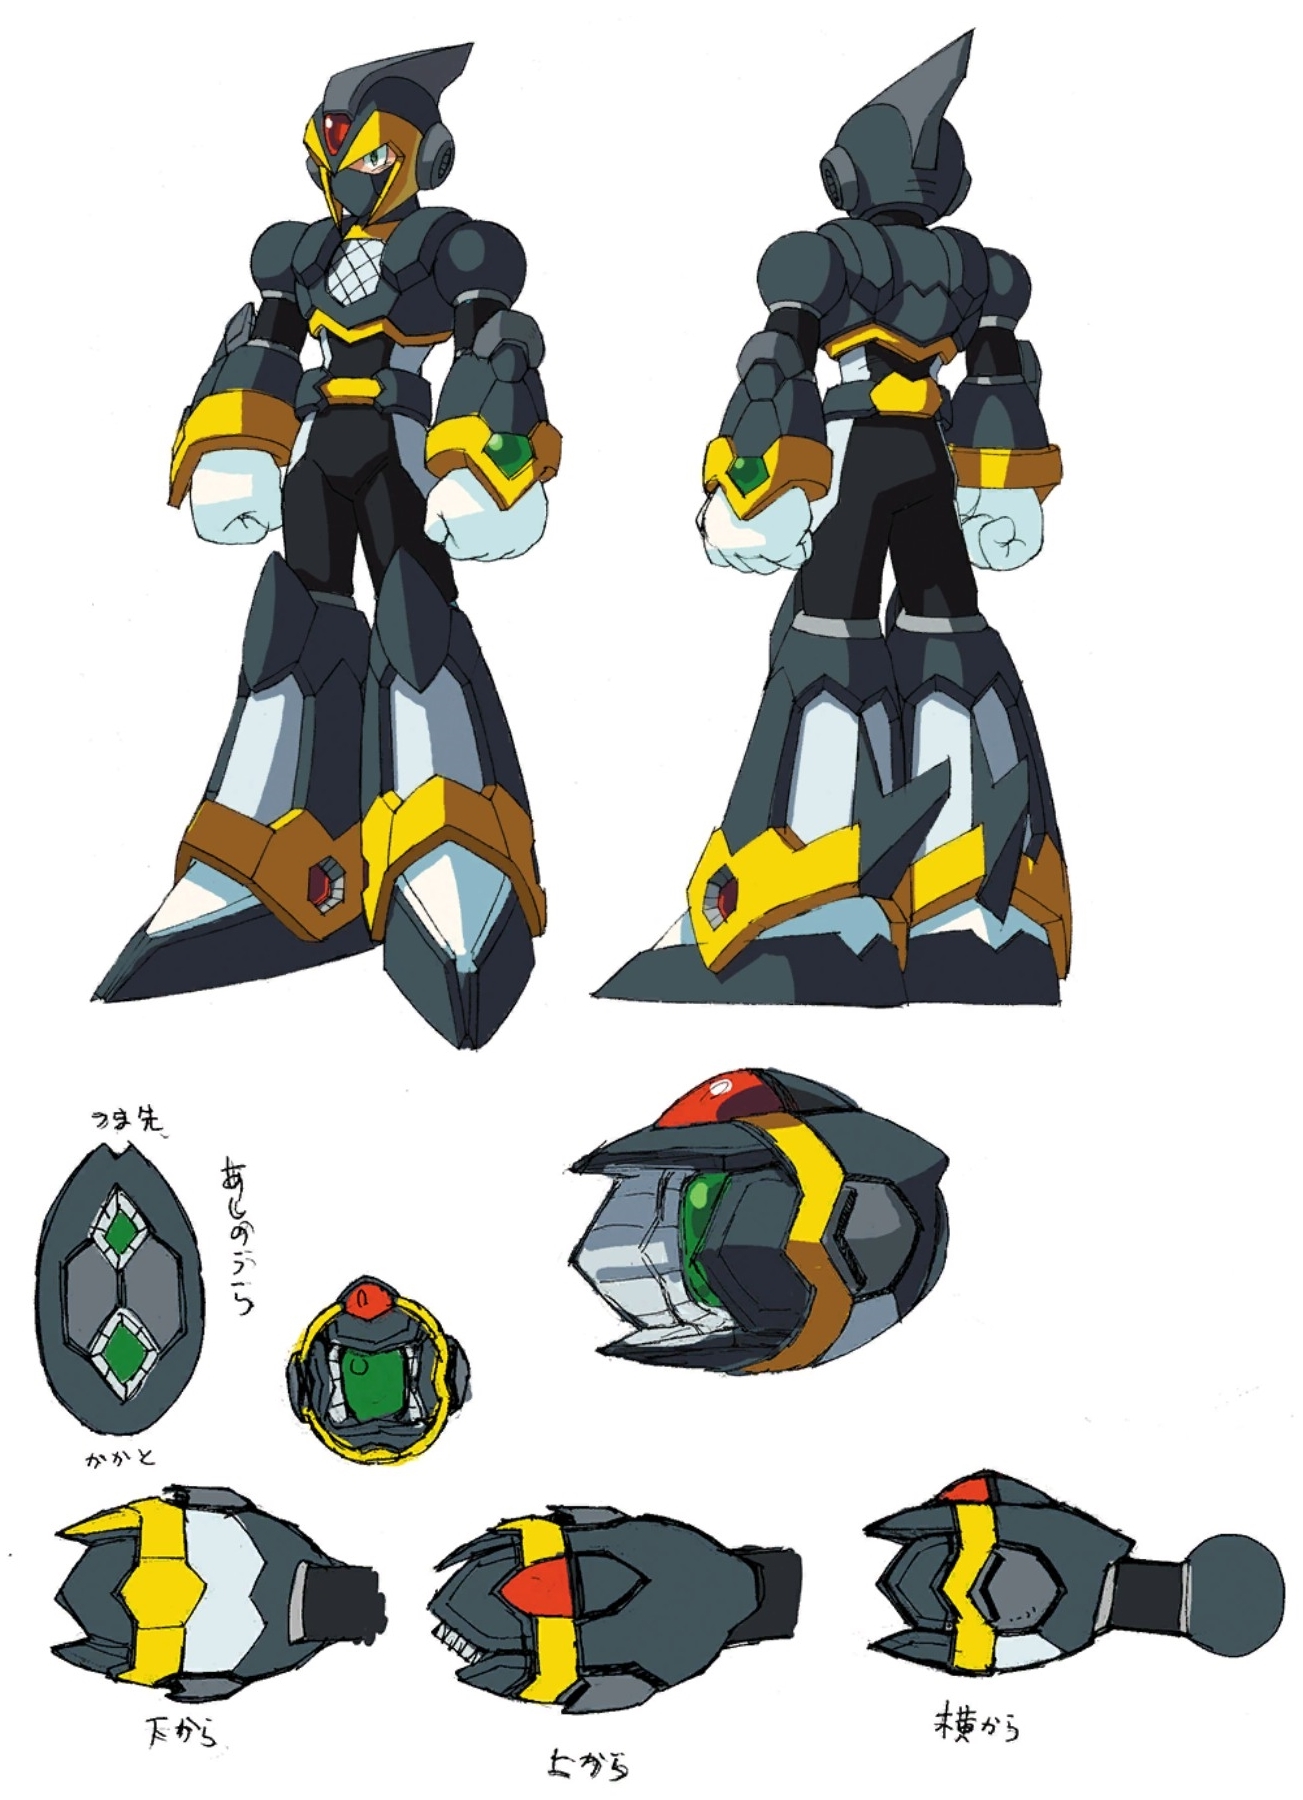 megaman x6 armors